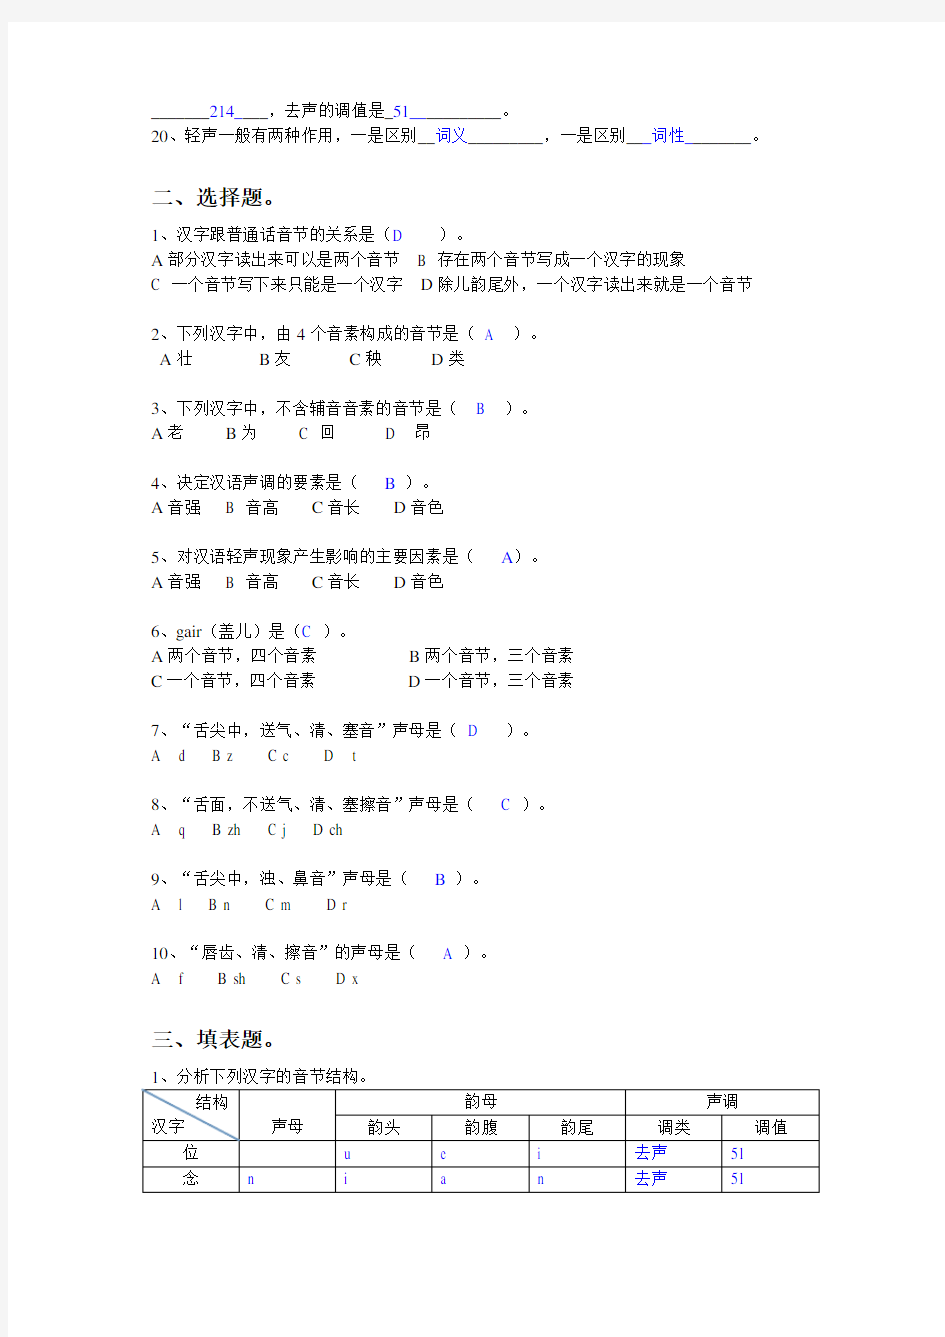 现代汉语平时作业题目(语音部分)-答案知识分享